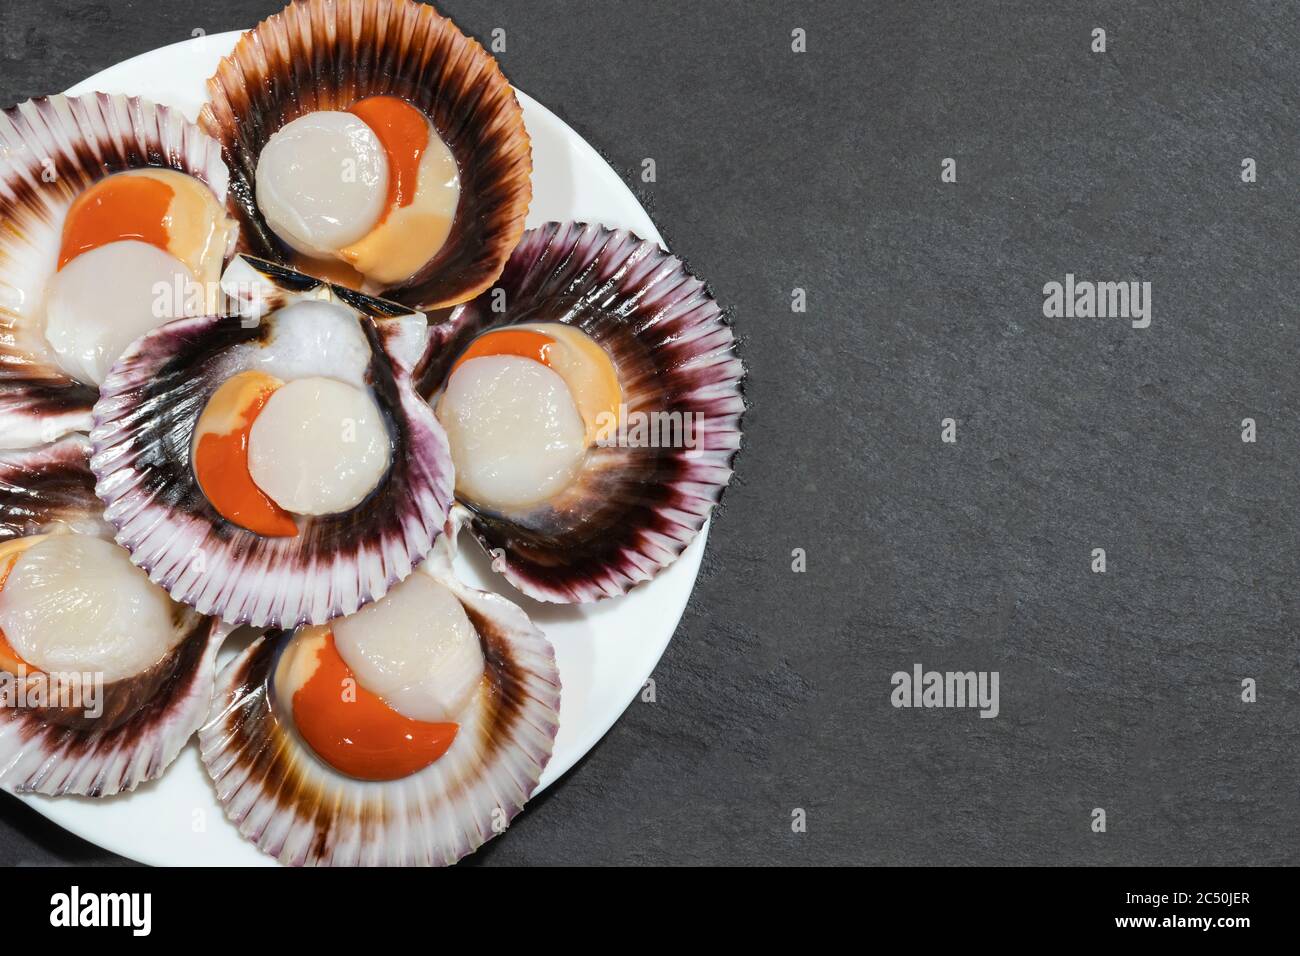 Ein weißer Teller mit großen rohen frischen Jakobsmuscheln mit orangenem Kaviar und Muscheln auf dunklem Hintergrund. Kopierbereich. Stockfoto